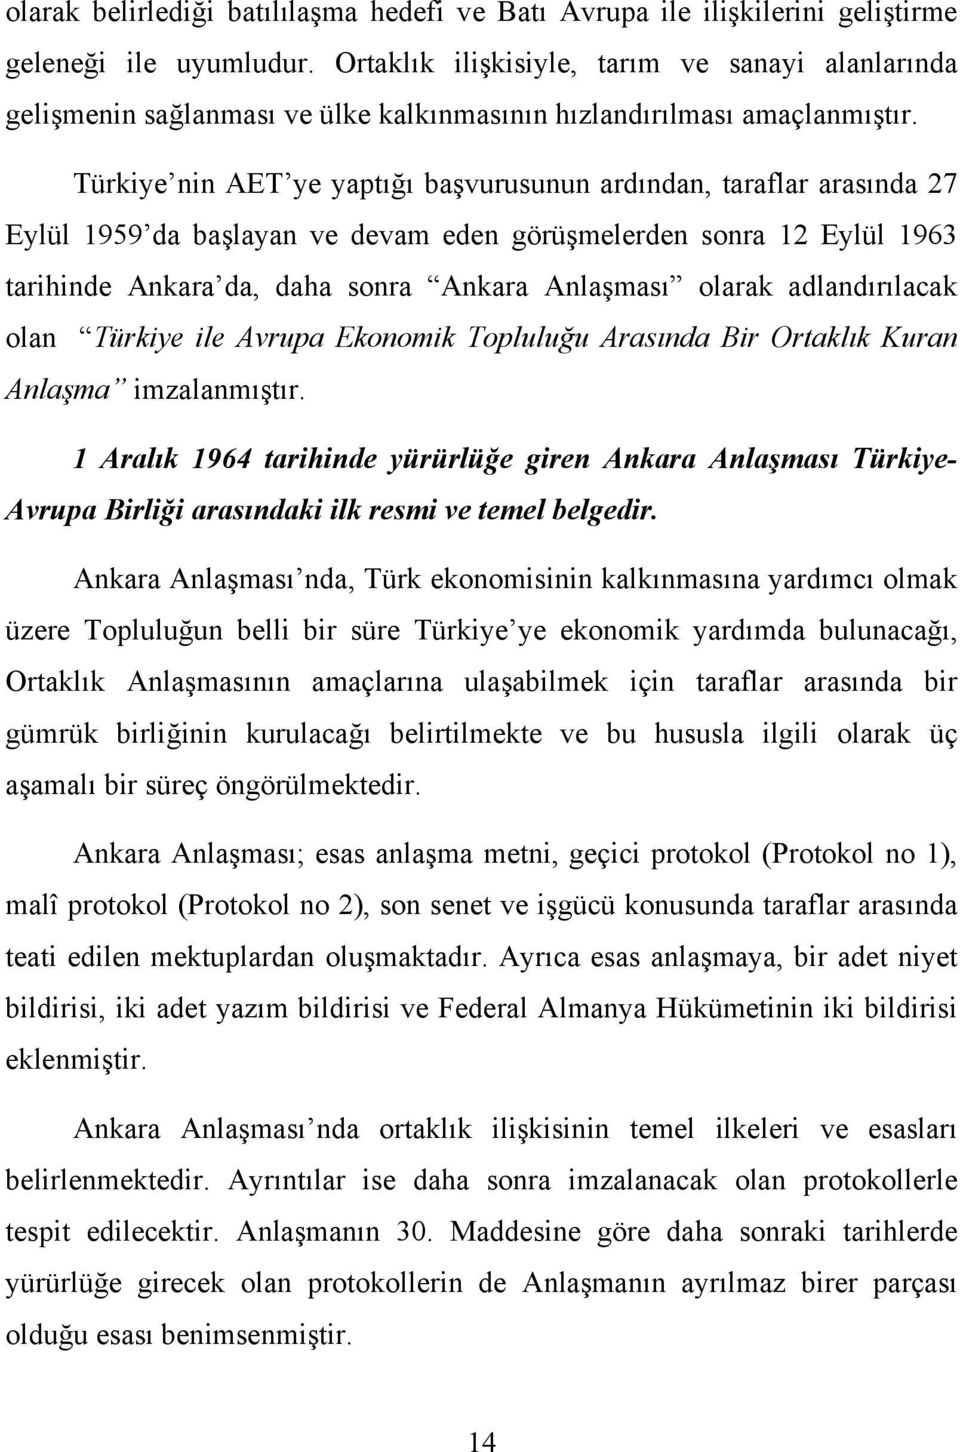 Türkiye nin AET ye yaptığı başvurusunun ardından, taraflar arasında 27 Eylül 1959 da başlayan ve devam eden görüşmelerden sonra 12 Eylül 1963 tarihinde Ankara da, daha sonra Ankara Anlaşması olarak